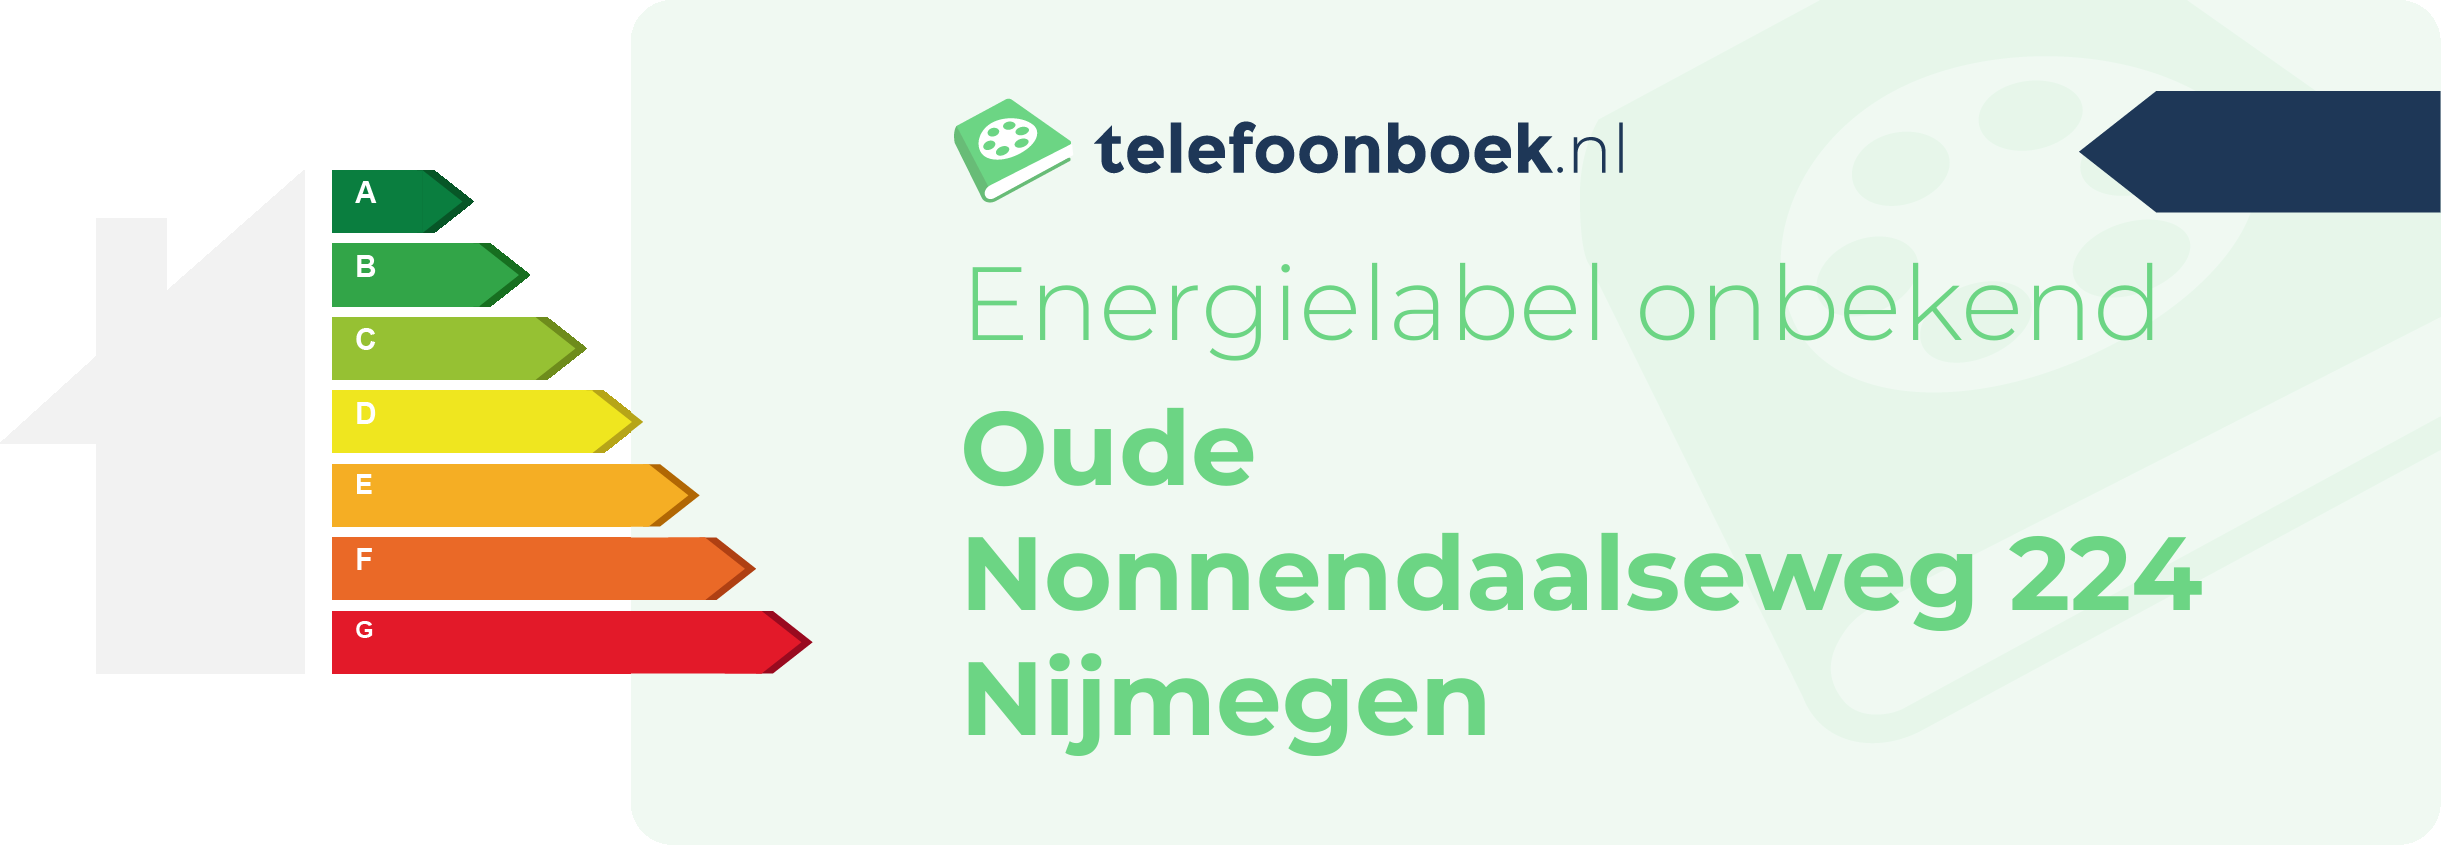 Energielabel Oude Nonnendaalseweg 224 Nijmegen